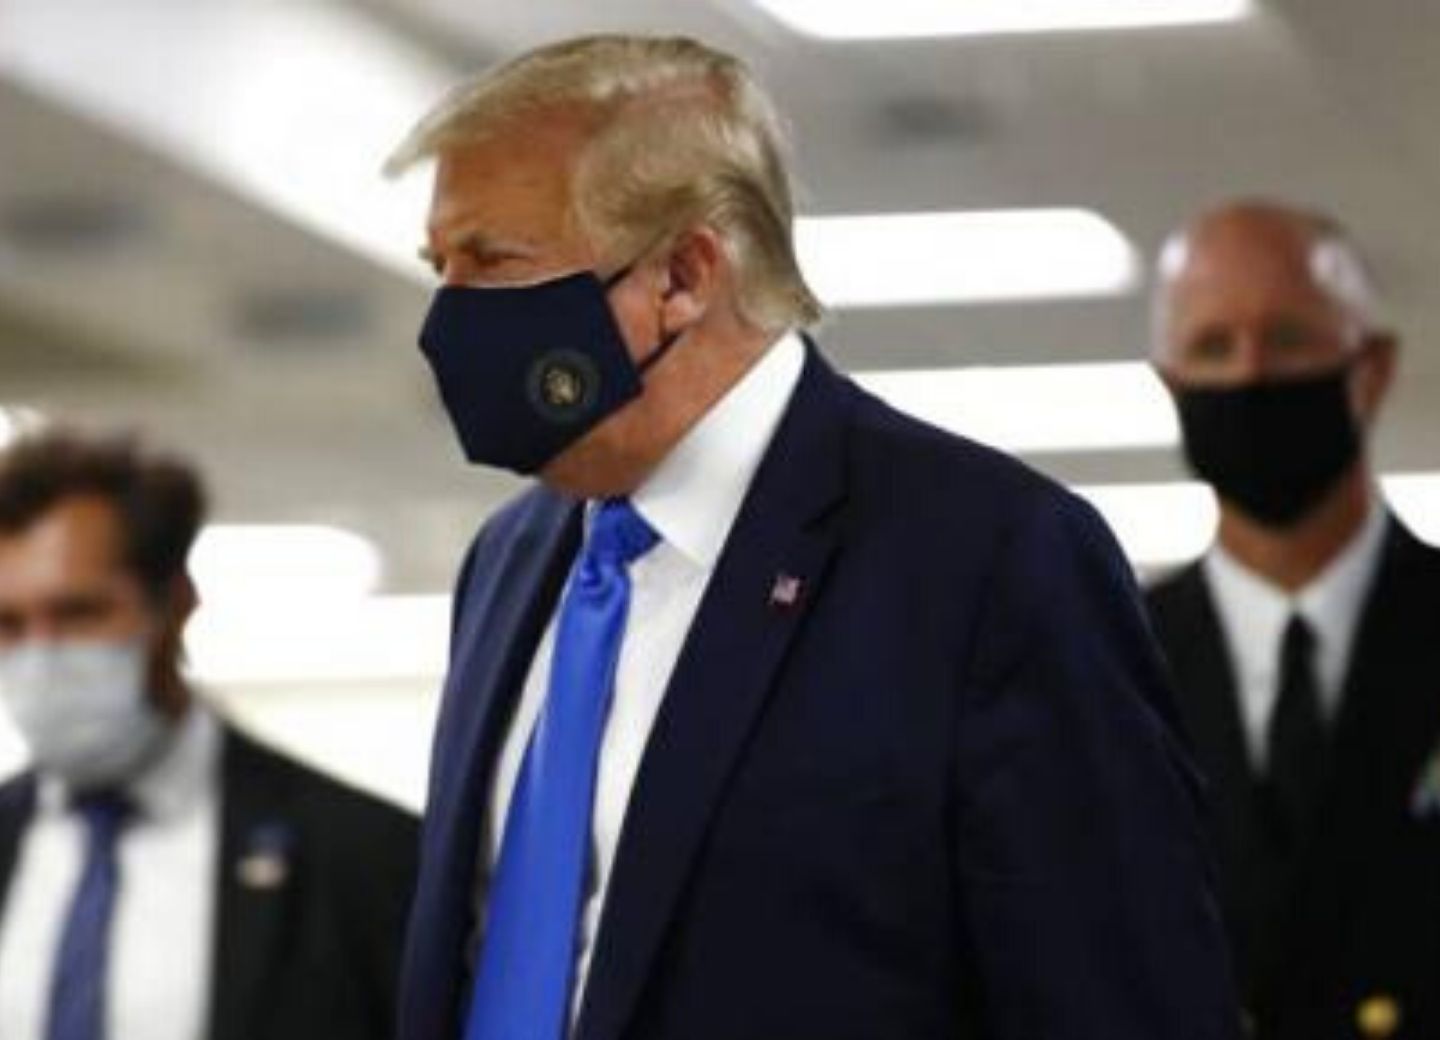 Трамп впервые появился на публике в защитной маске